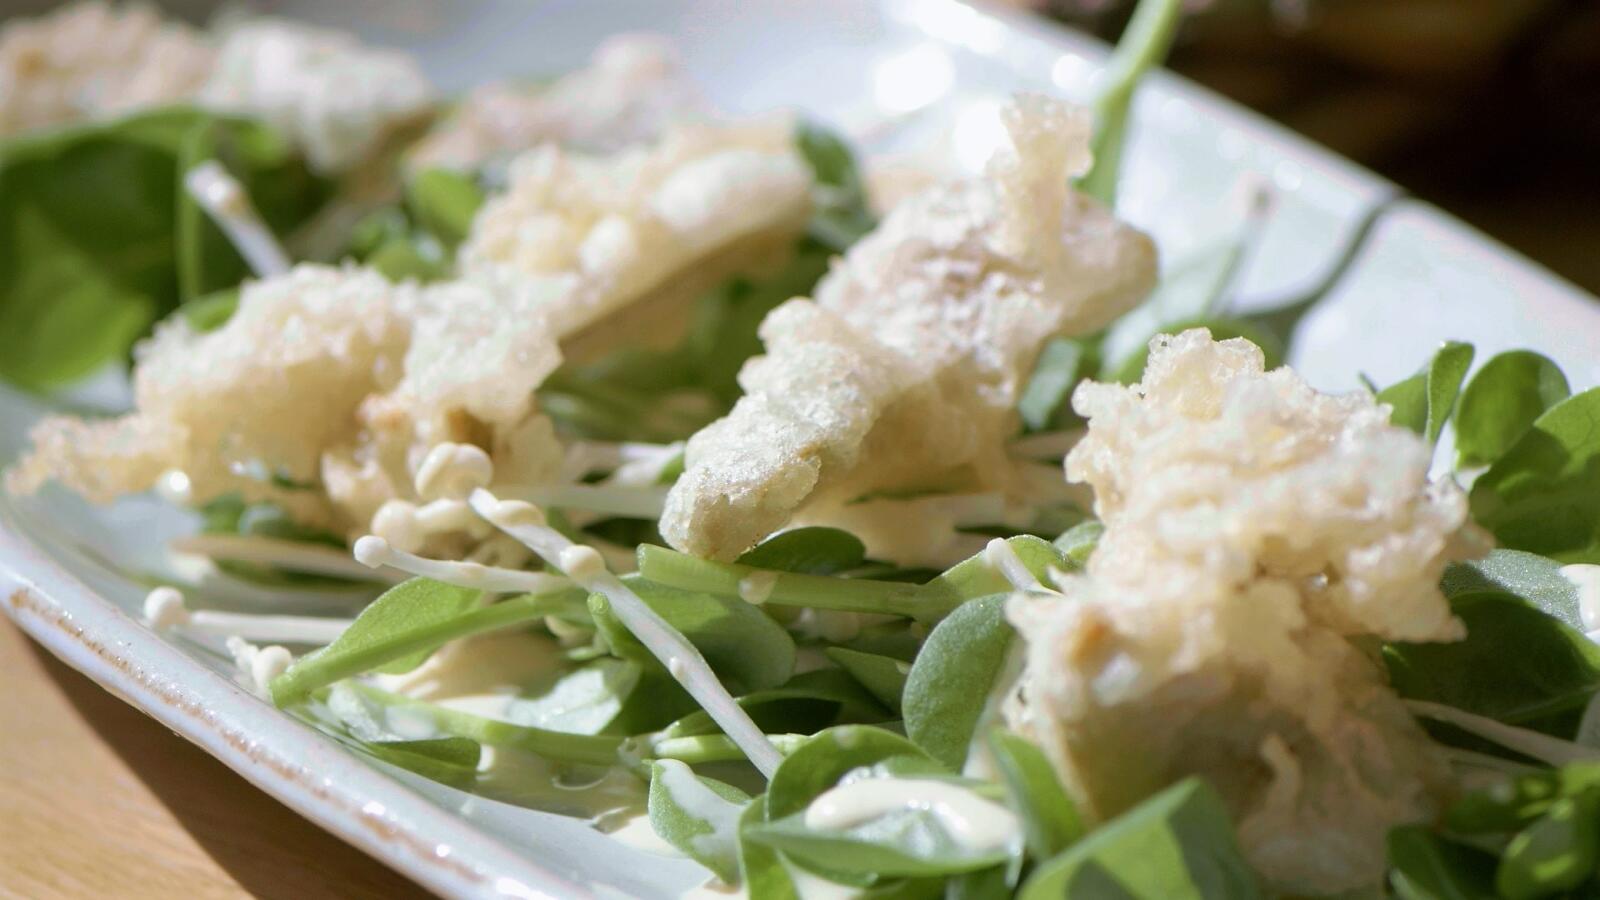 Salade met postelein en tempura van artisjok met citroen-mosterddressing